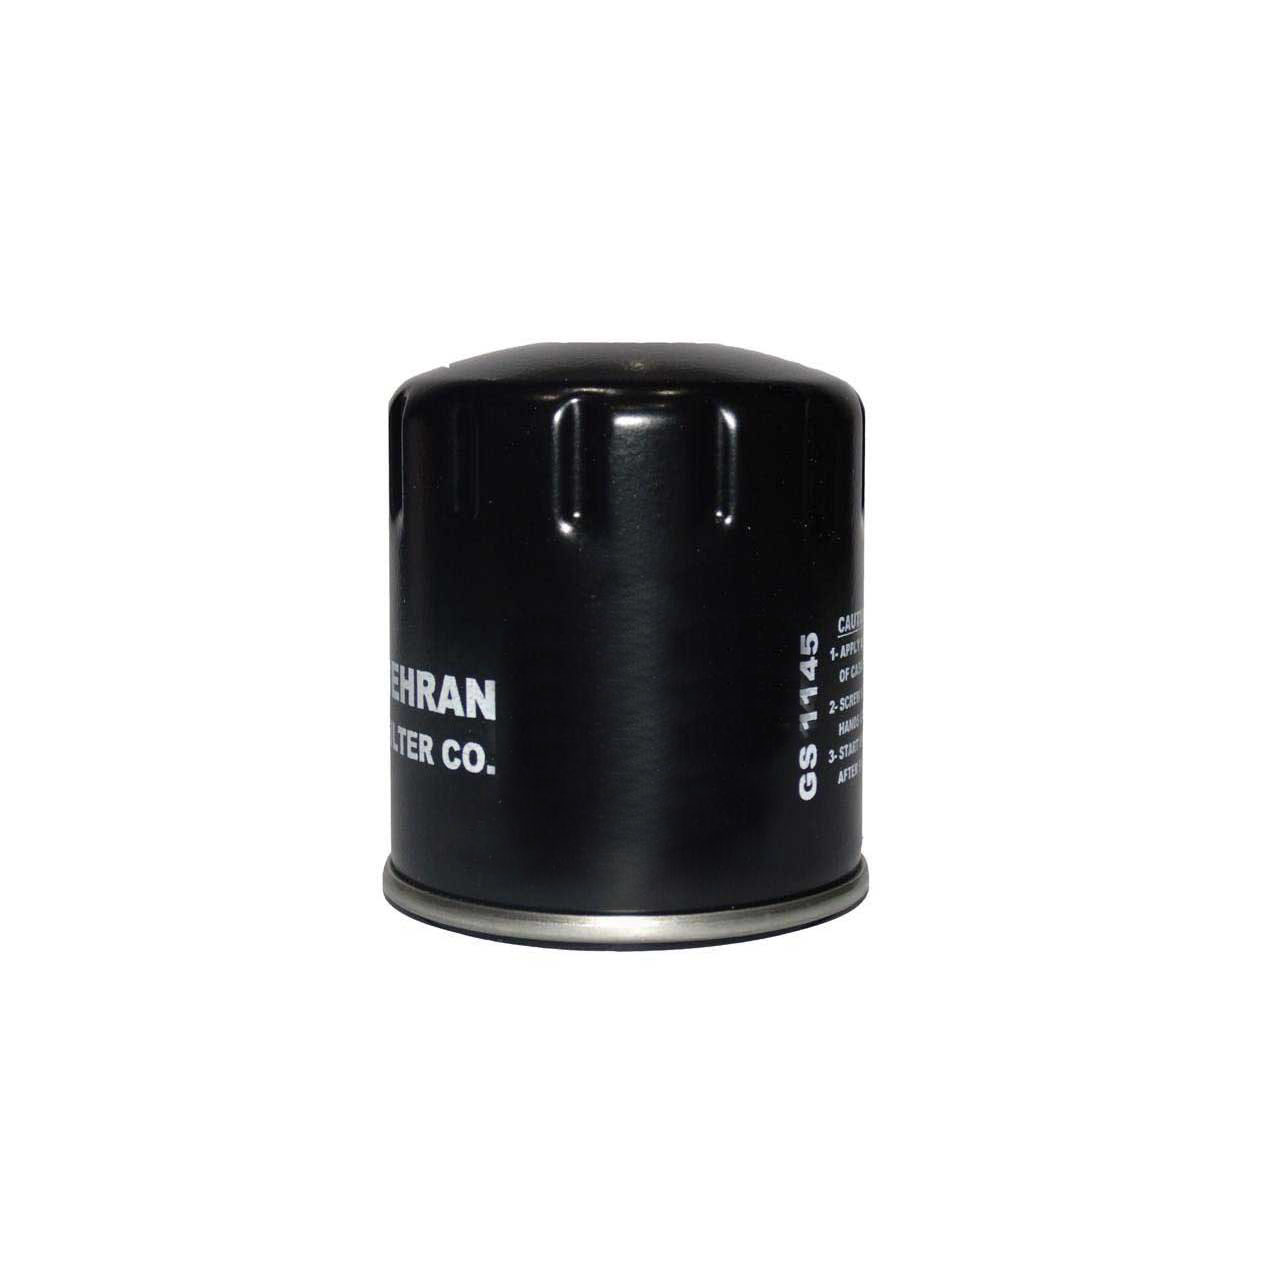 فیلتر روغن بهران مدل 02 مناسب برای برلیانس H330 و H320